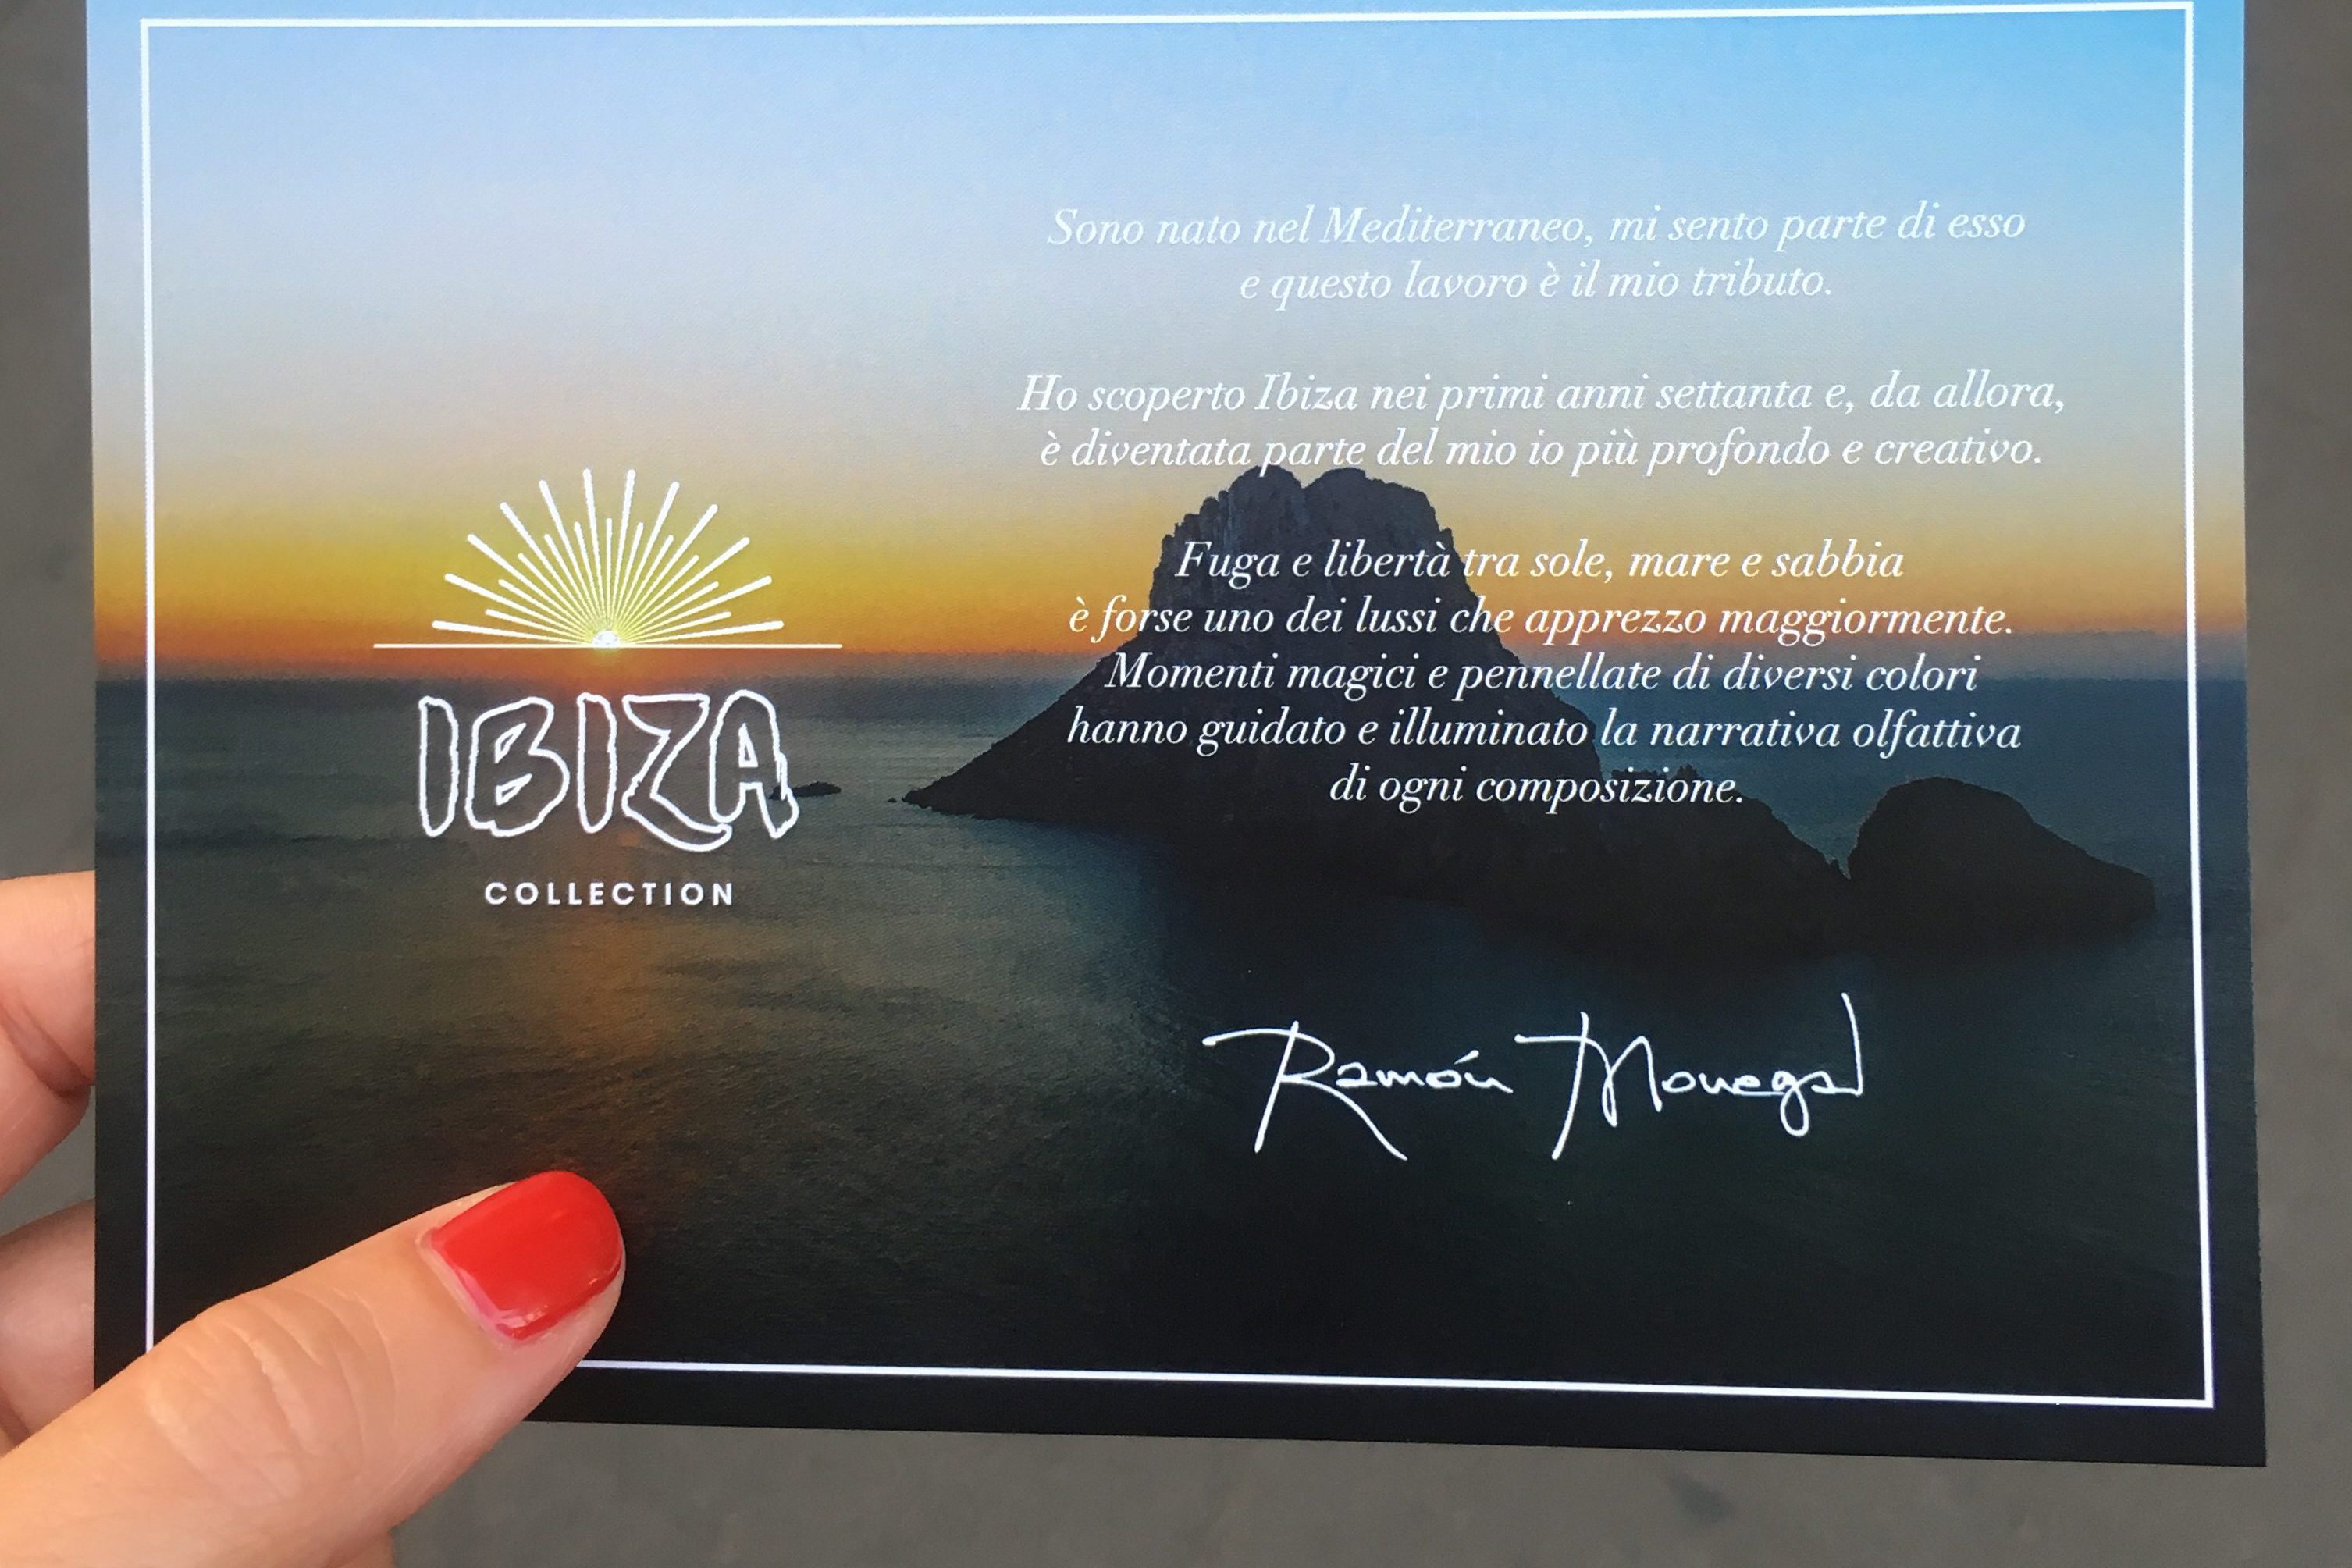 Ibiza Collection: Ramon Monegal racconta Ibiza in 3 fragranze